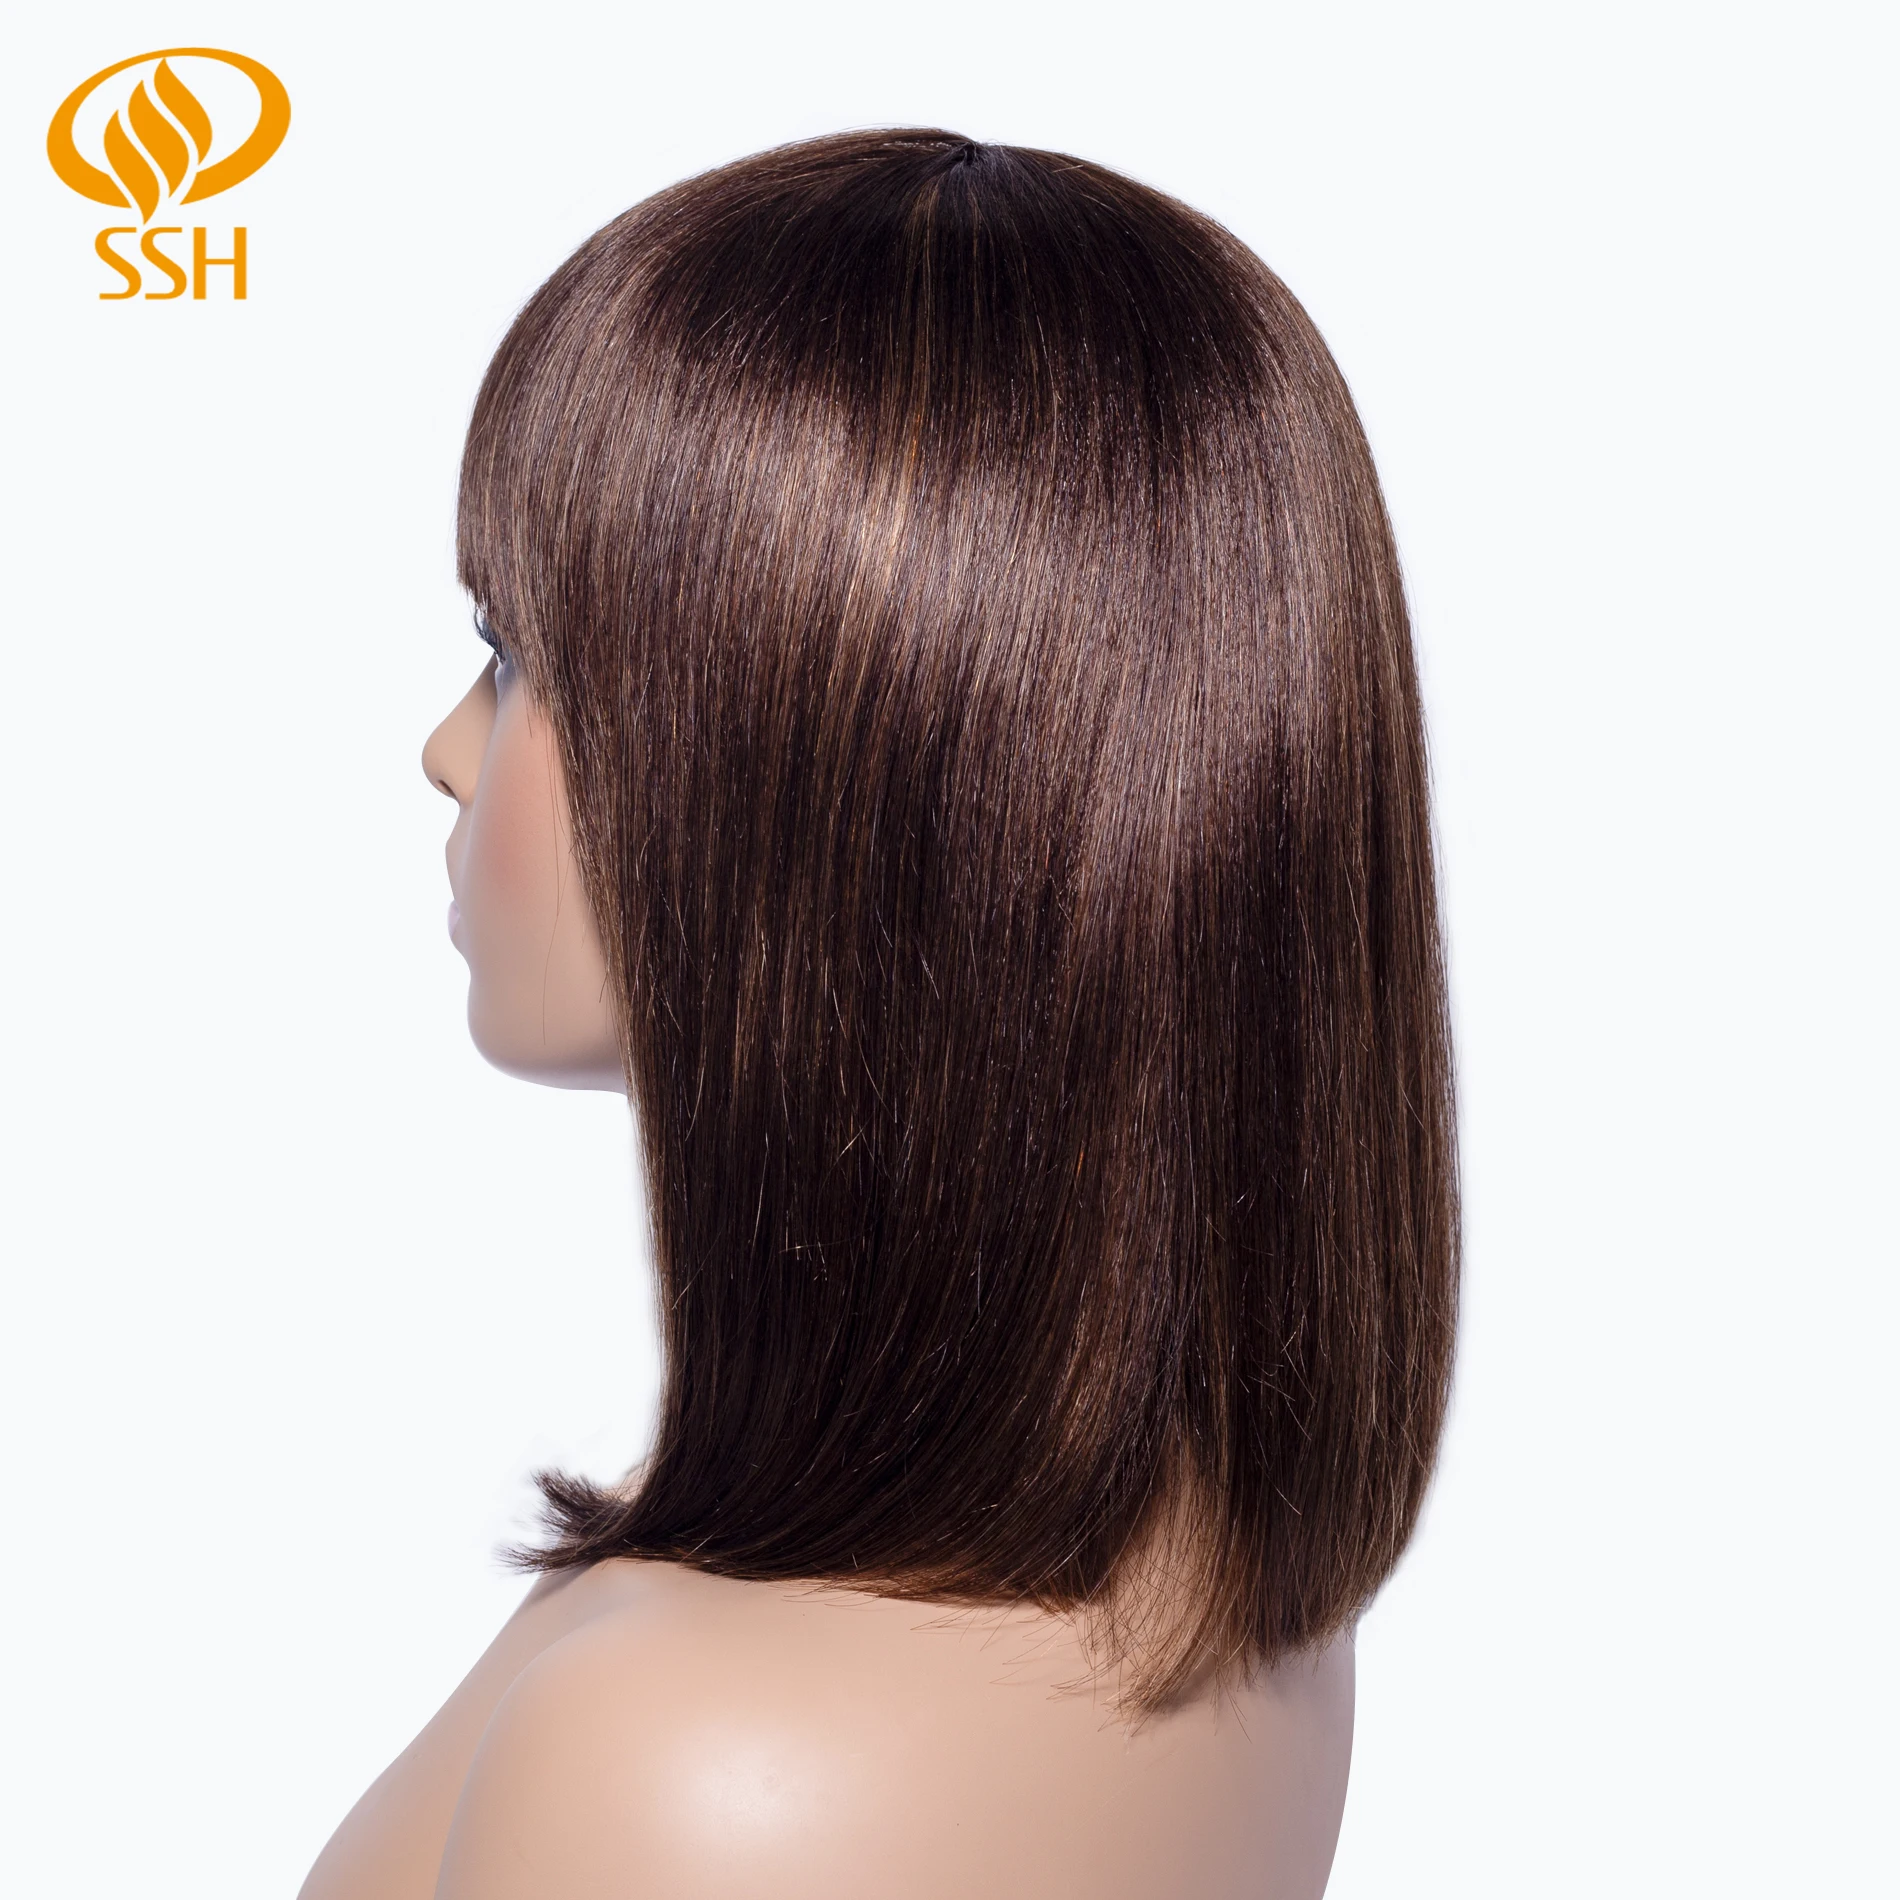 SSH Remy человеческие волосы короткий боб парики для женщин прямые волосы коричневый основные парики боб с челкой модный естественный вид